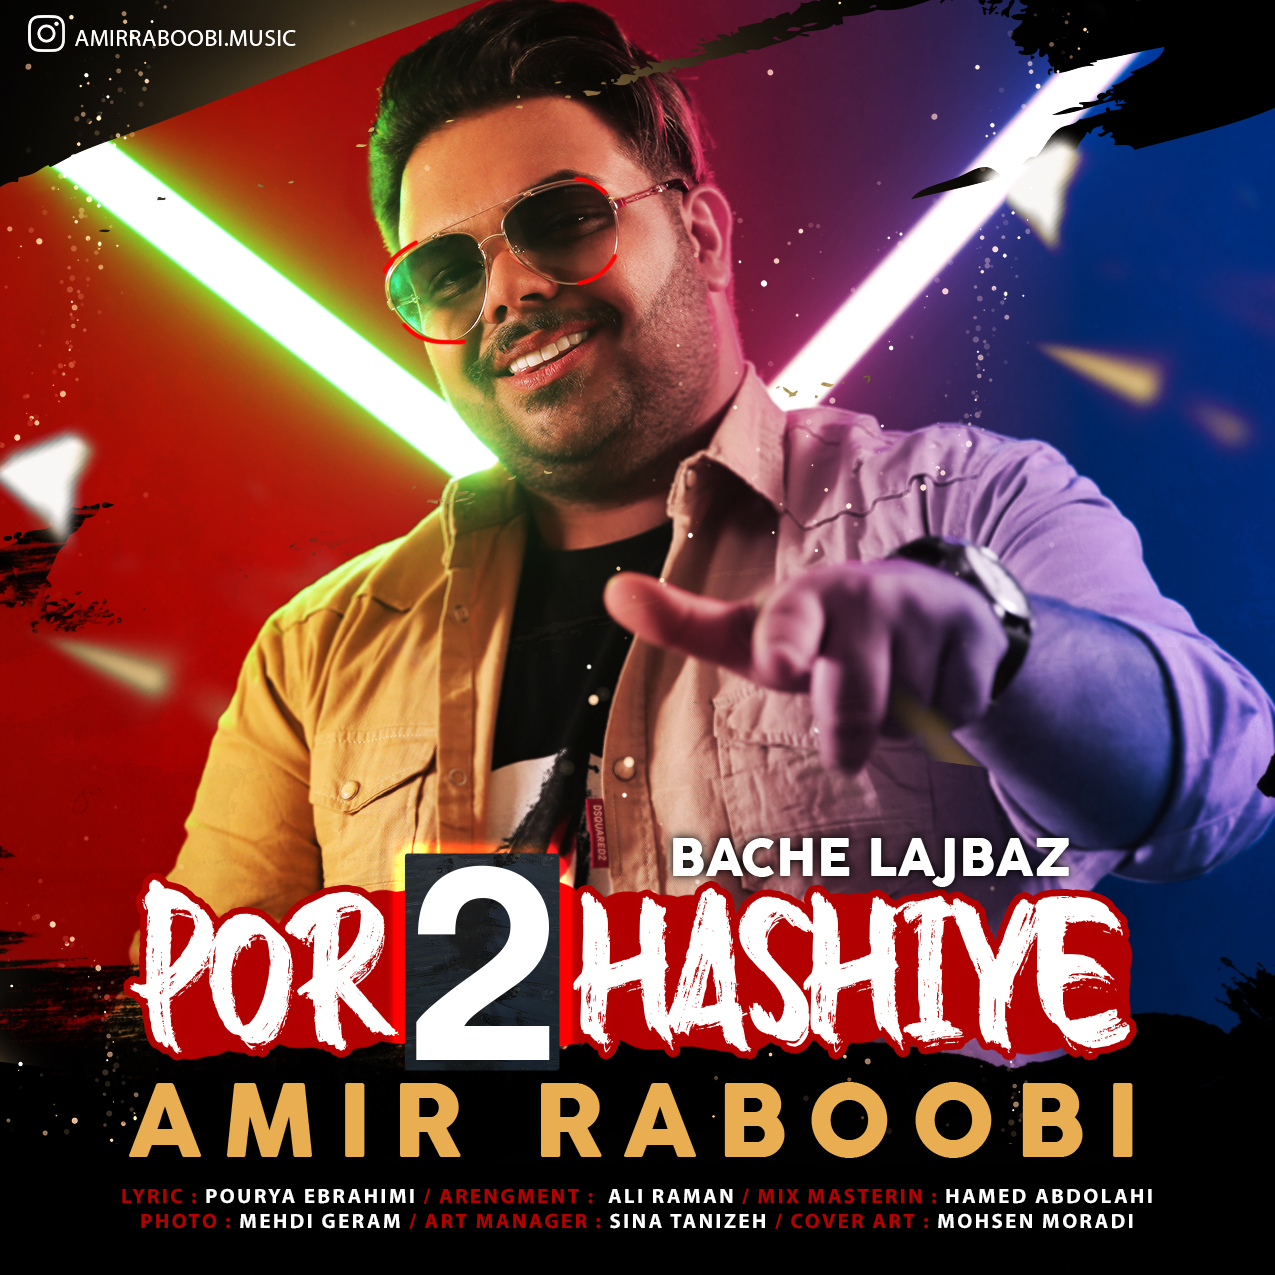  دانلود آهنگ جدید امیر ربوبی - پر حاشیه 2 | Download New Music By Amir Raboobi - Por Hashiye 2